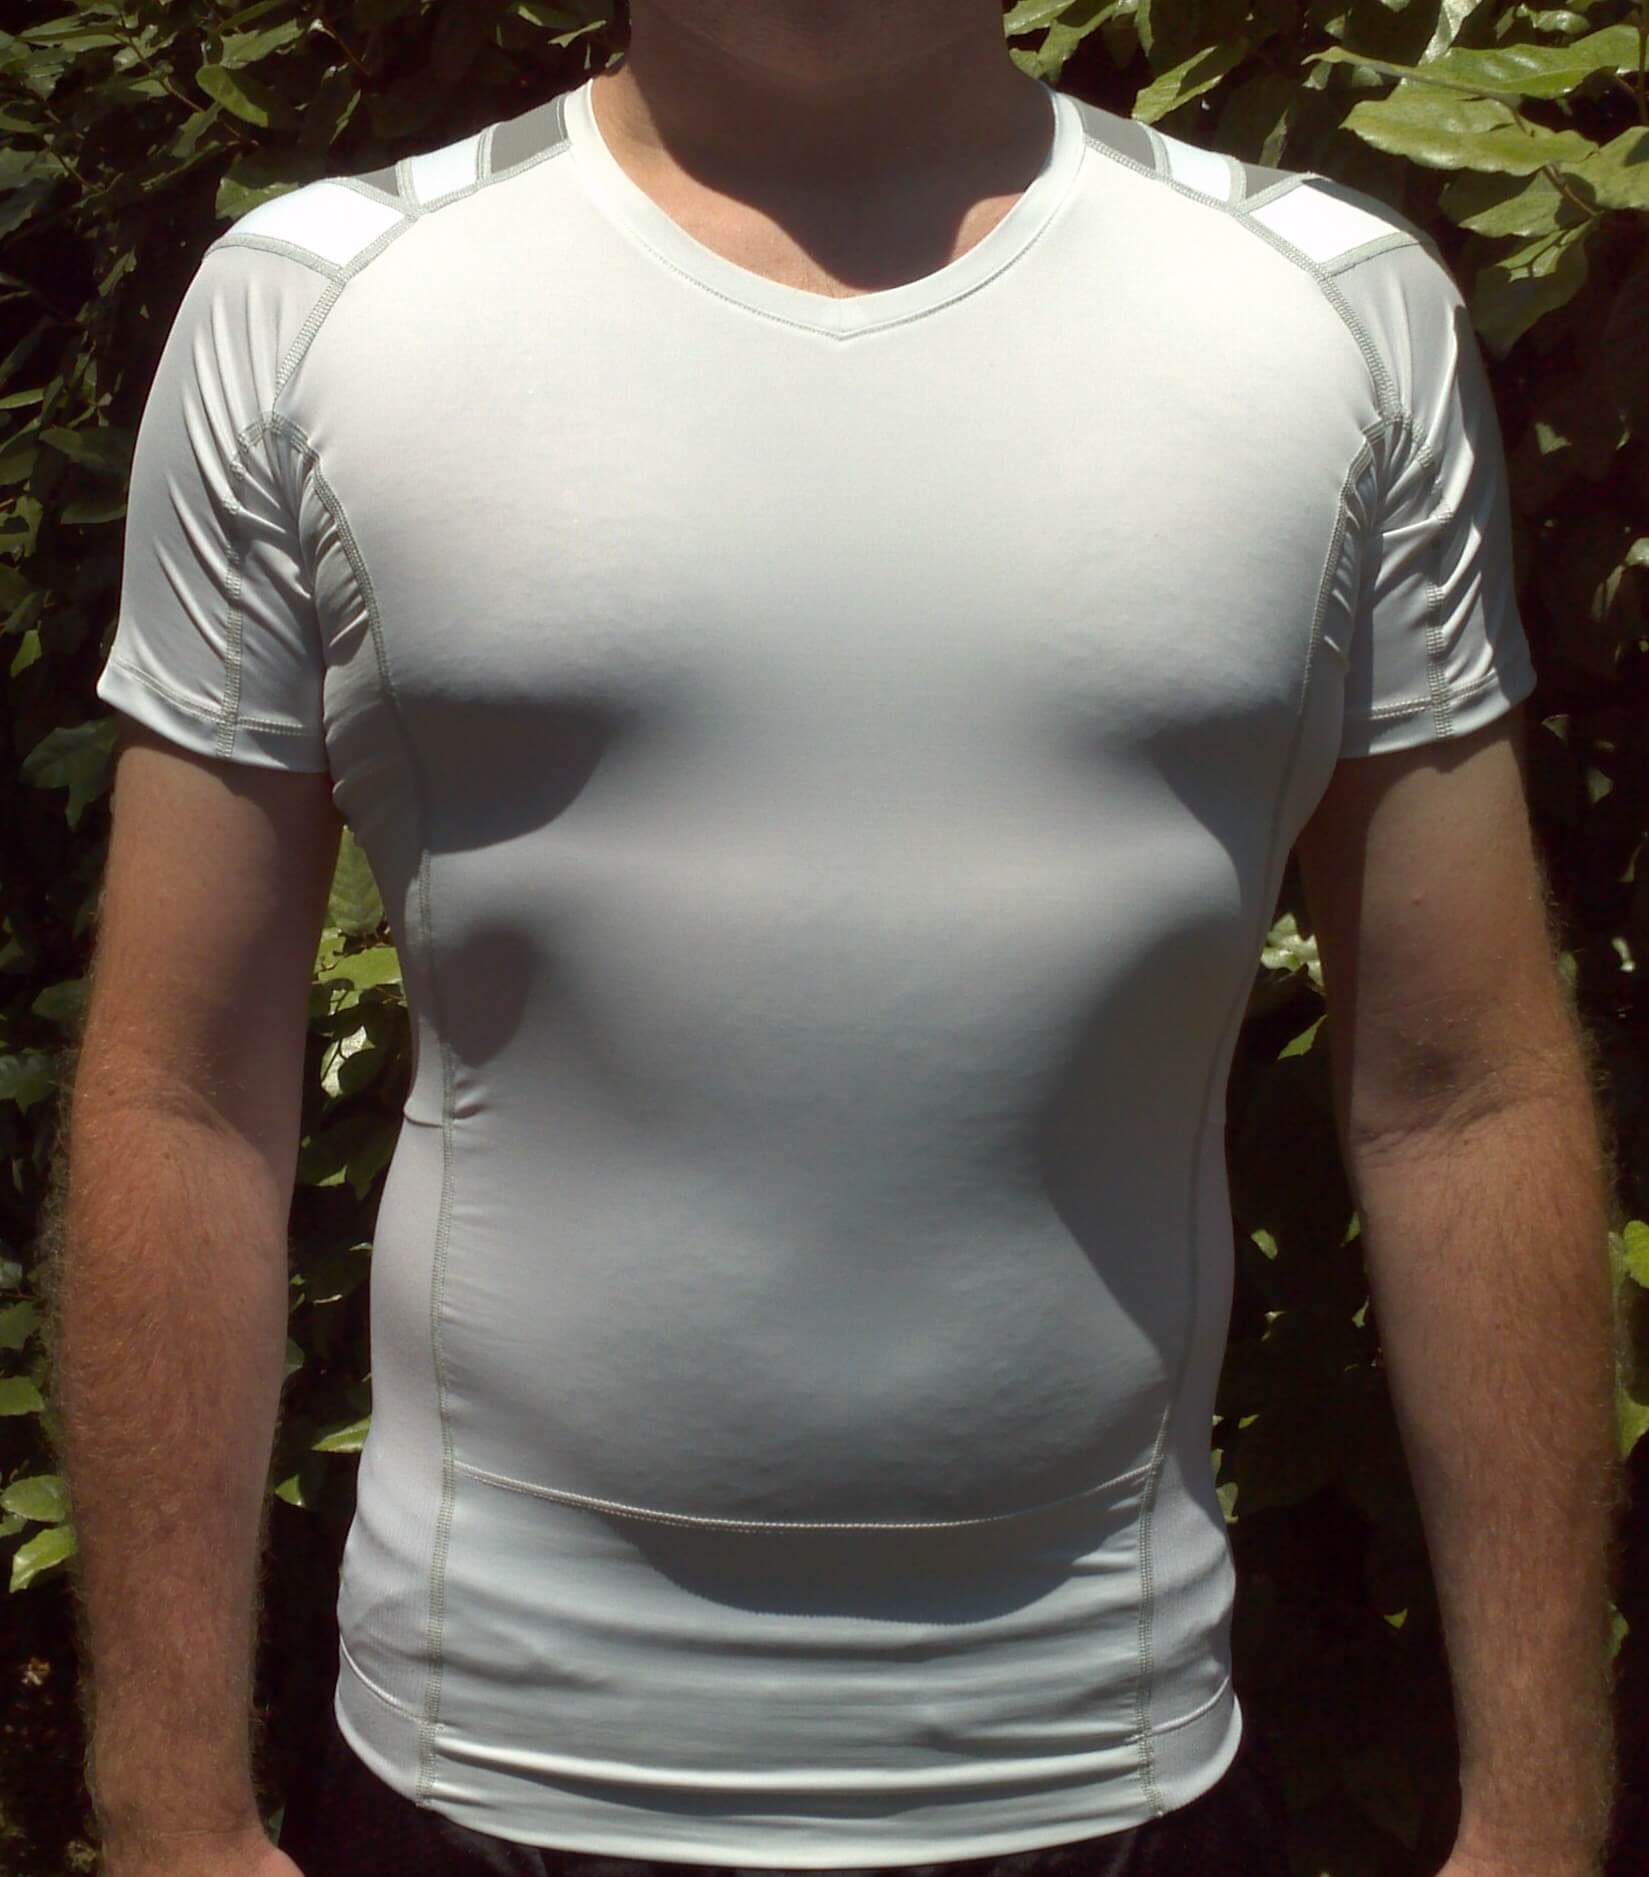 ALIGNMED Posture Shirt 2.0 Zipper for Men, White, X-Small 